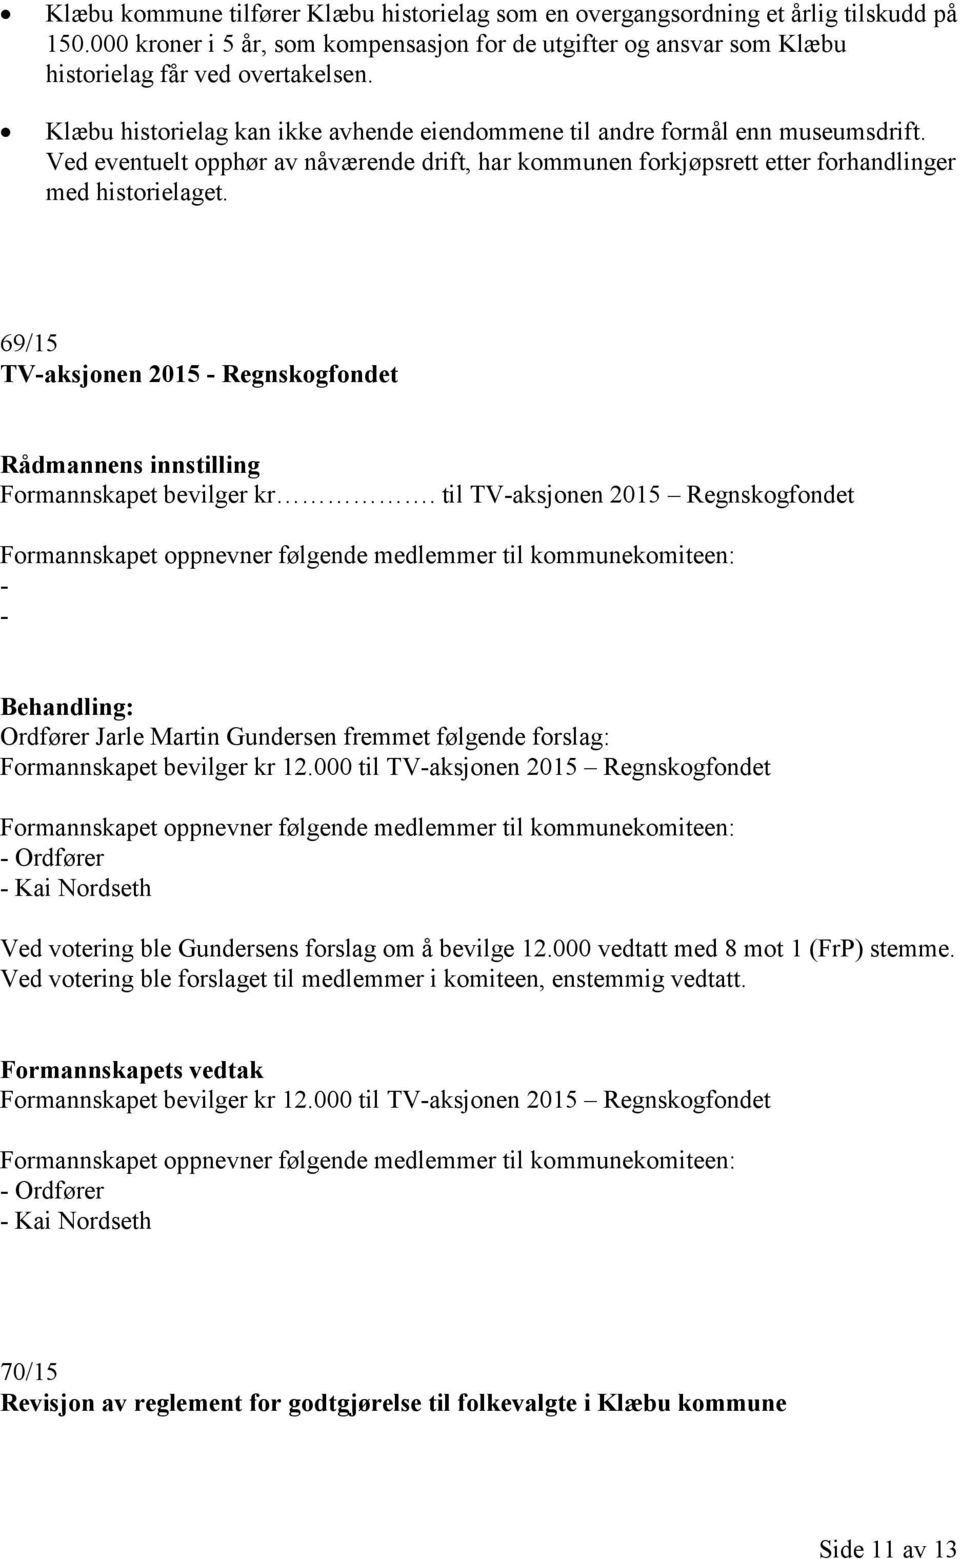 69/15 TV-aksjonen 2015 - Regnskogfondet Formannskapet bevilger kr.